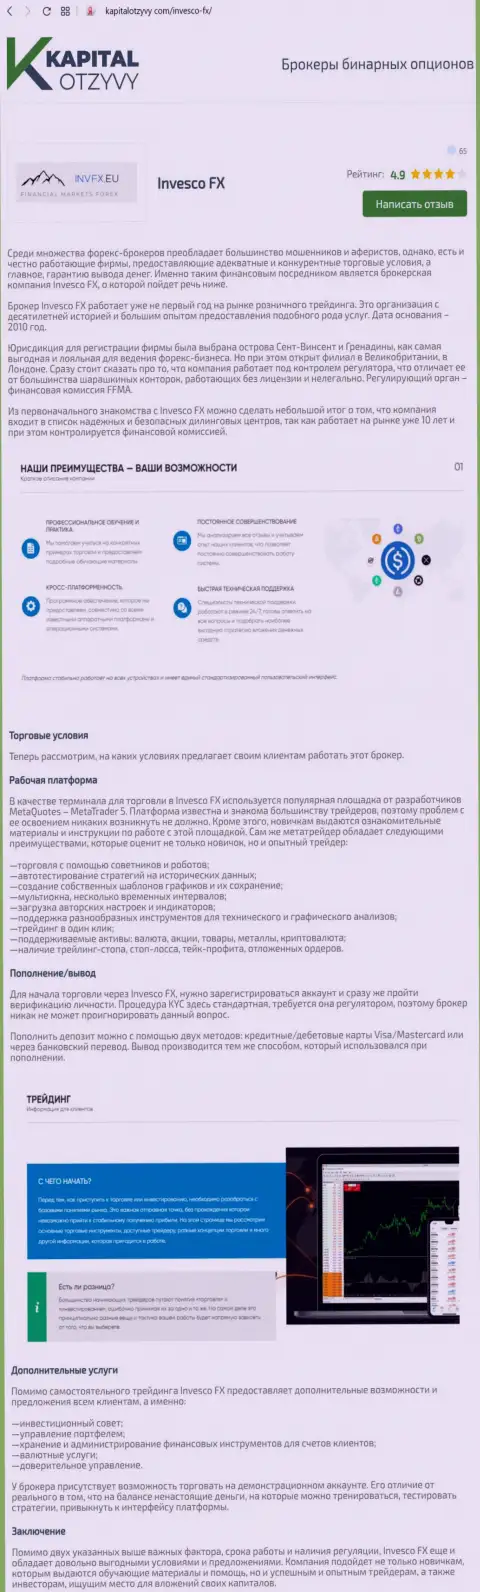 Обзор форекс компании INVFX, который взят с интернет-сервиса KapitalOtzyvy Com